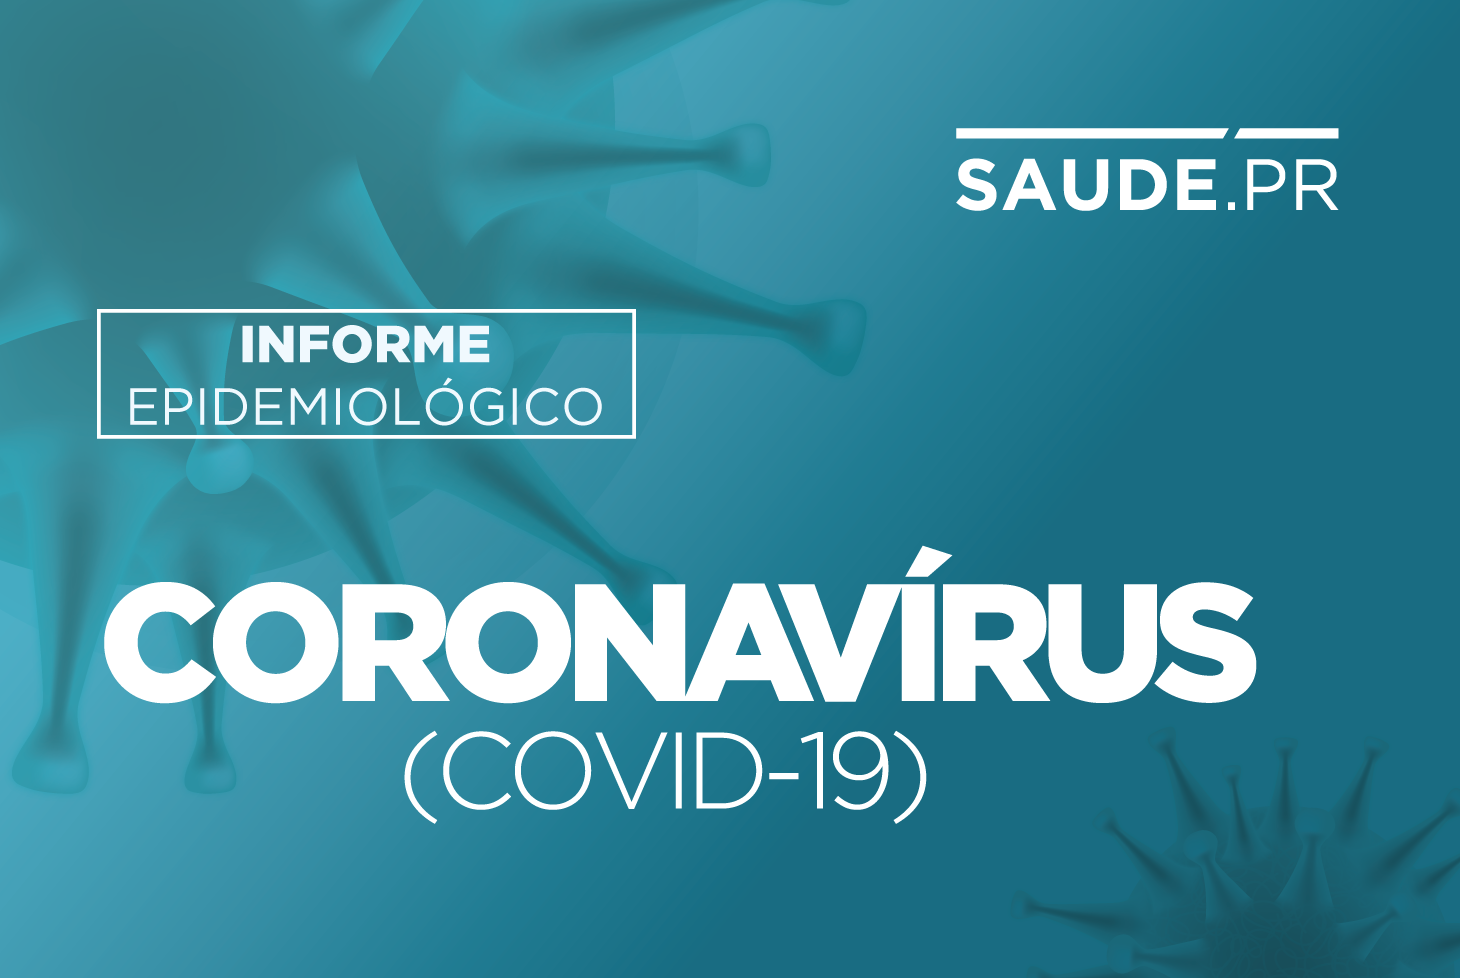  Paraná tem 790 novos casos de Covid-19